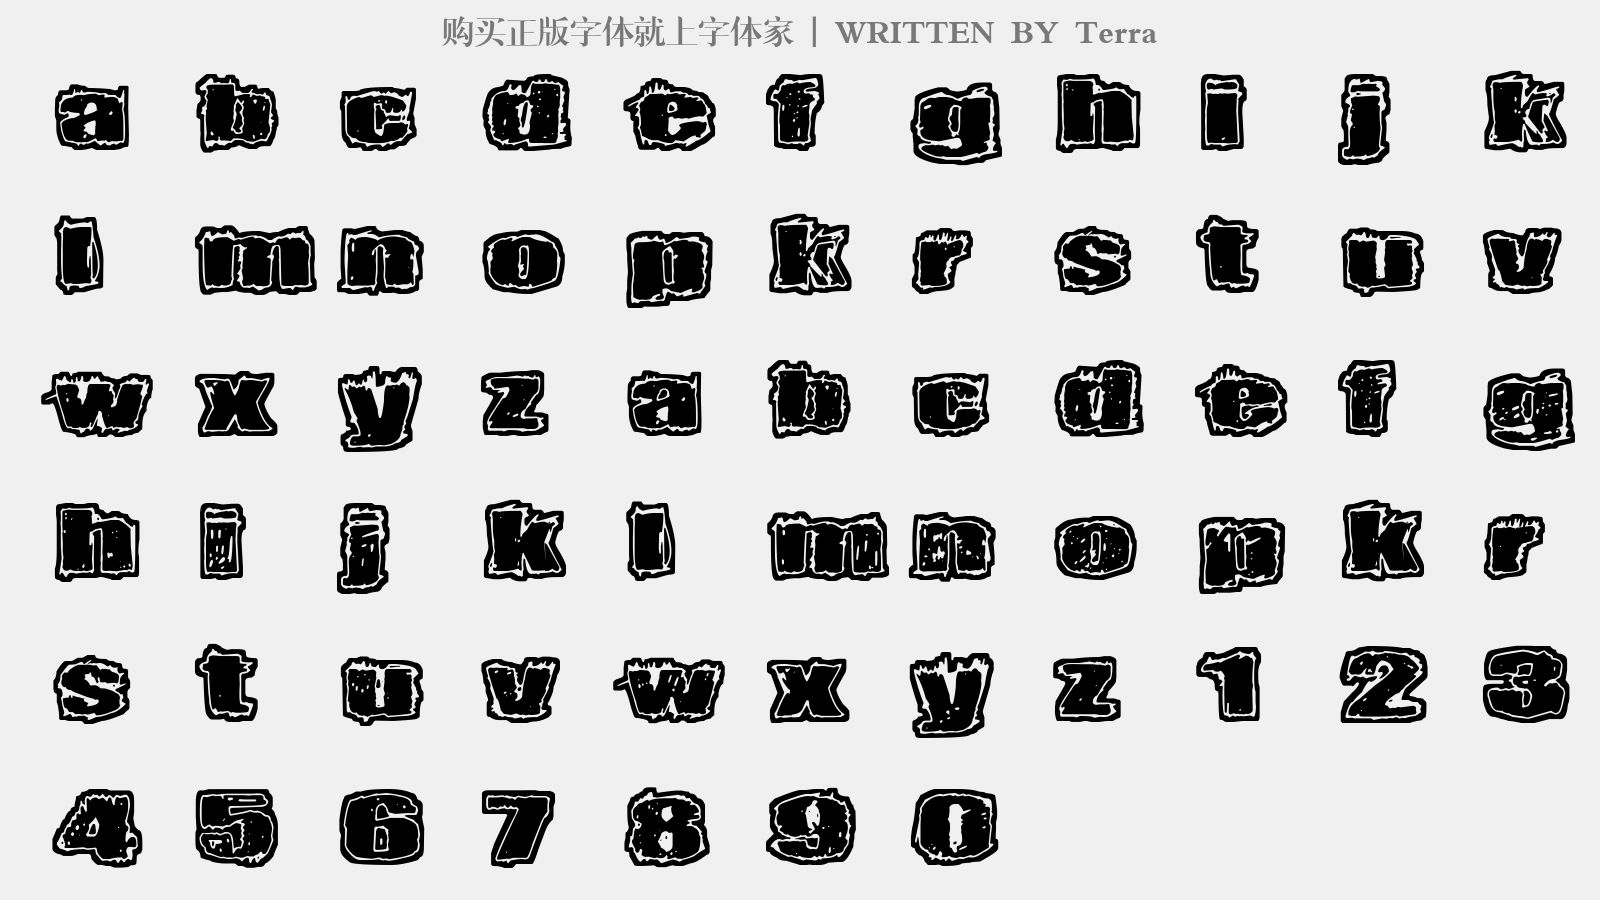 Terra - 大写字母/小写字母/数字